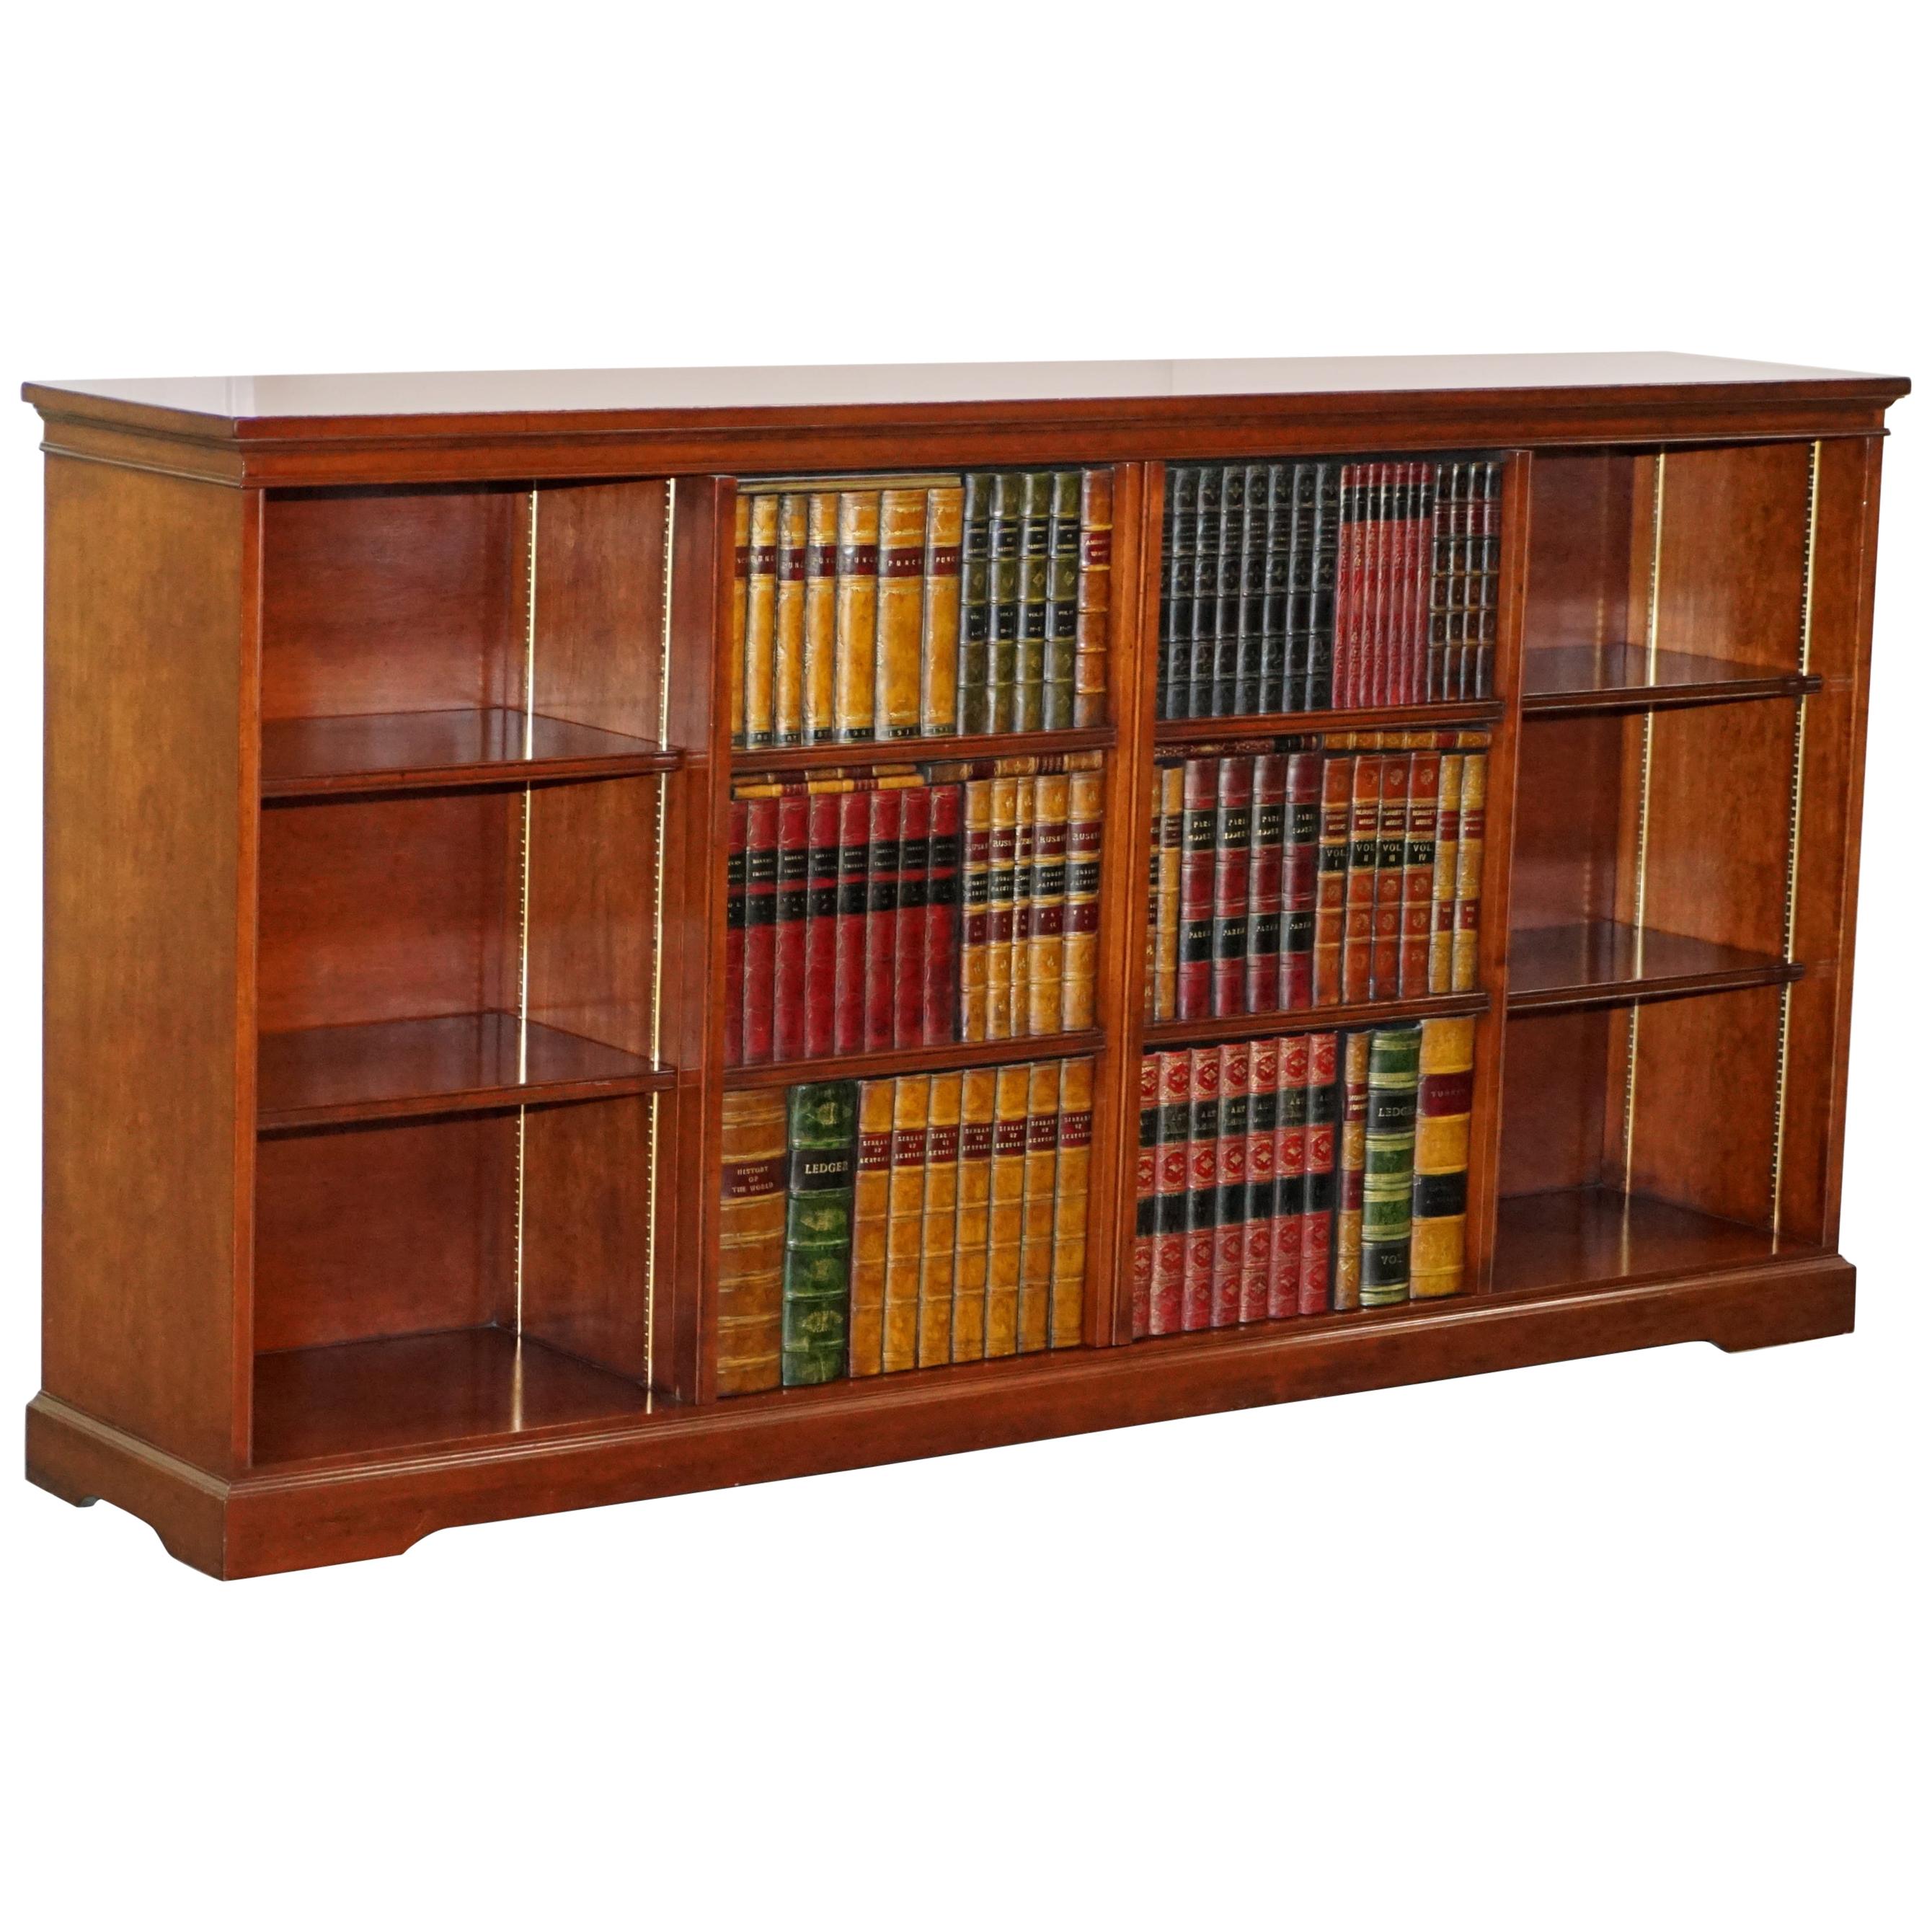 Harrods London Kennedy meuble de rangement TV en bois de feuillus pour meuble de rangement en faux livres très rare